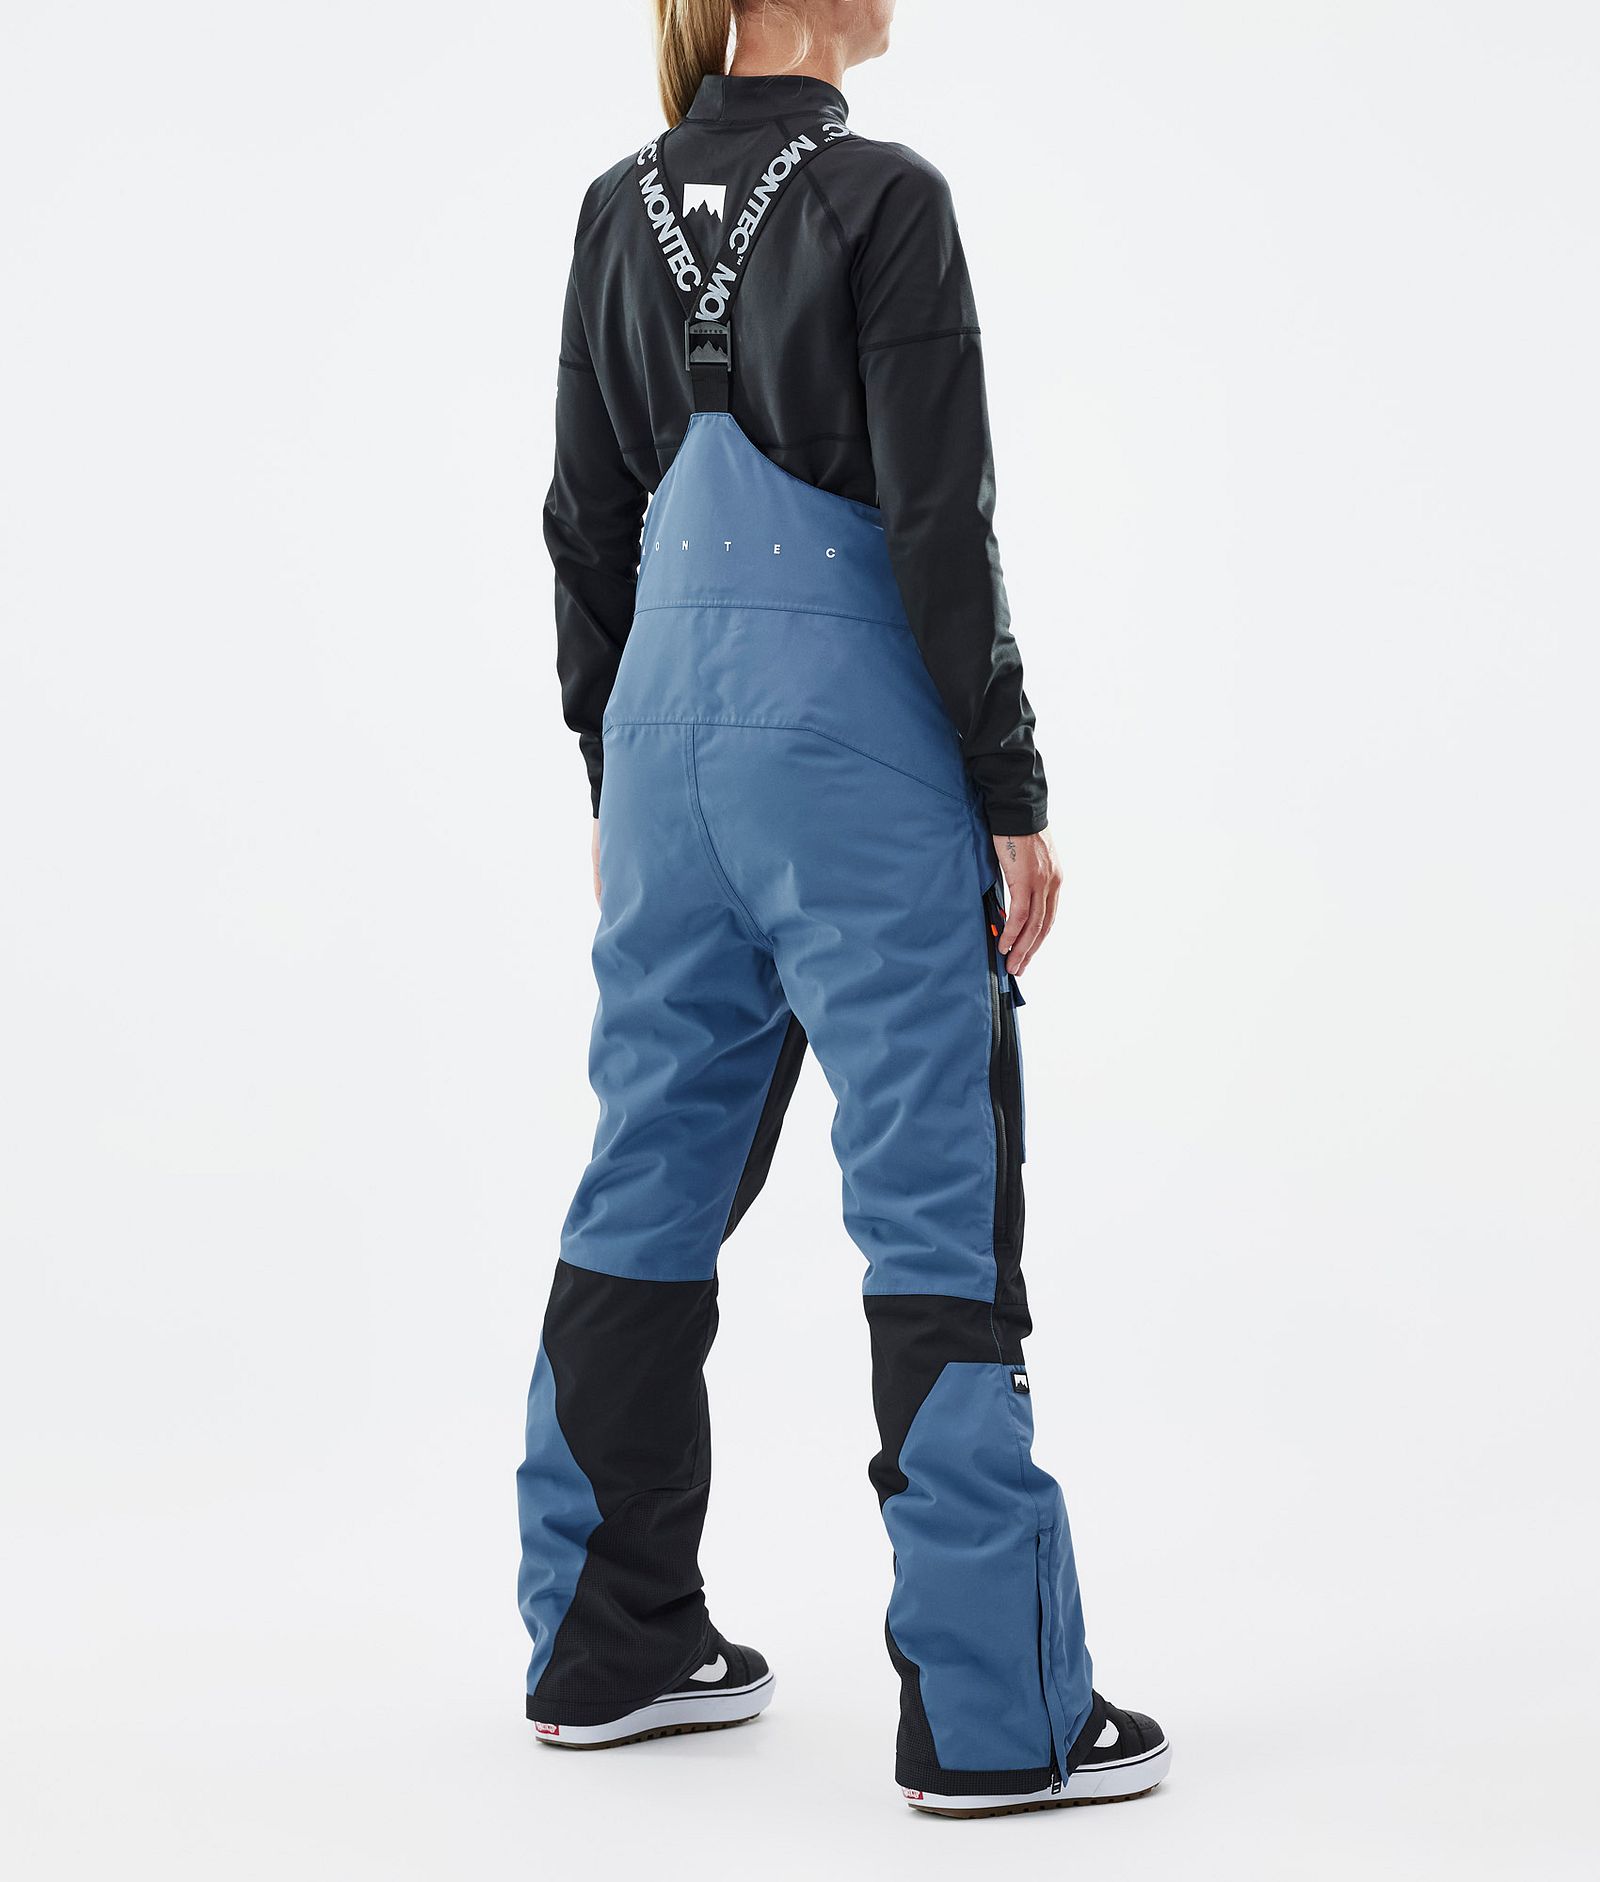 Fawk W Pantalon de Snowboard Femme Blue Steel/Black Renewed